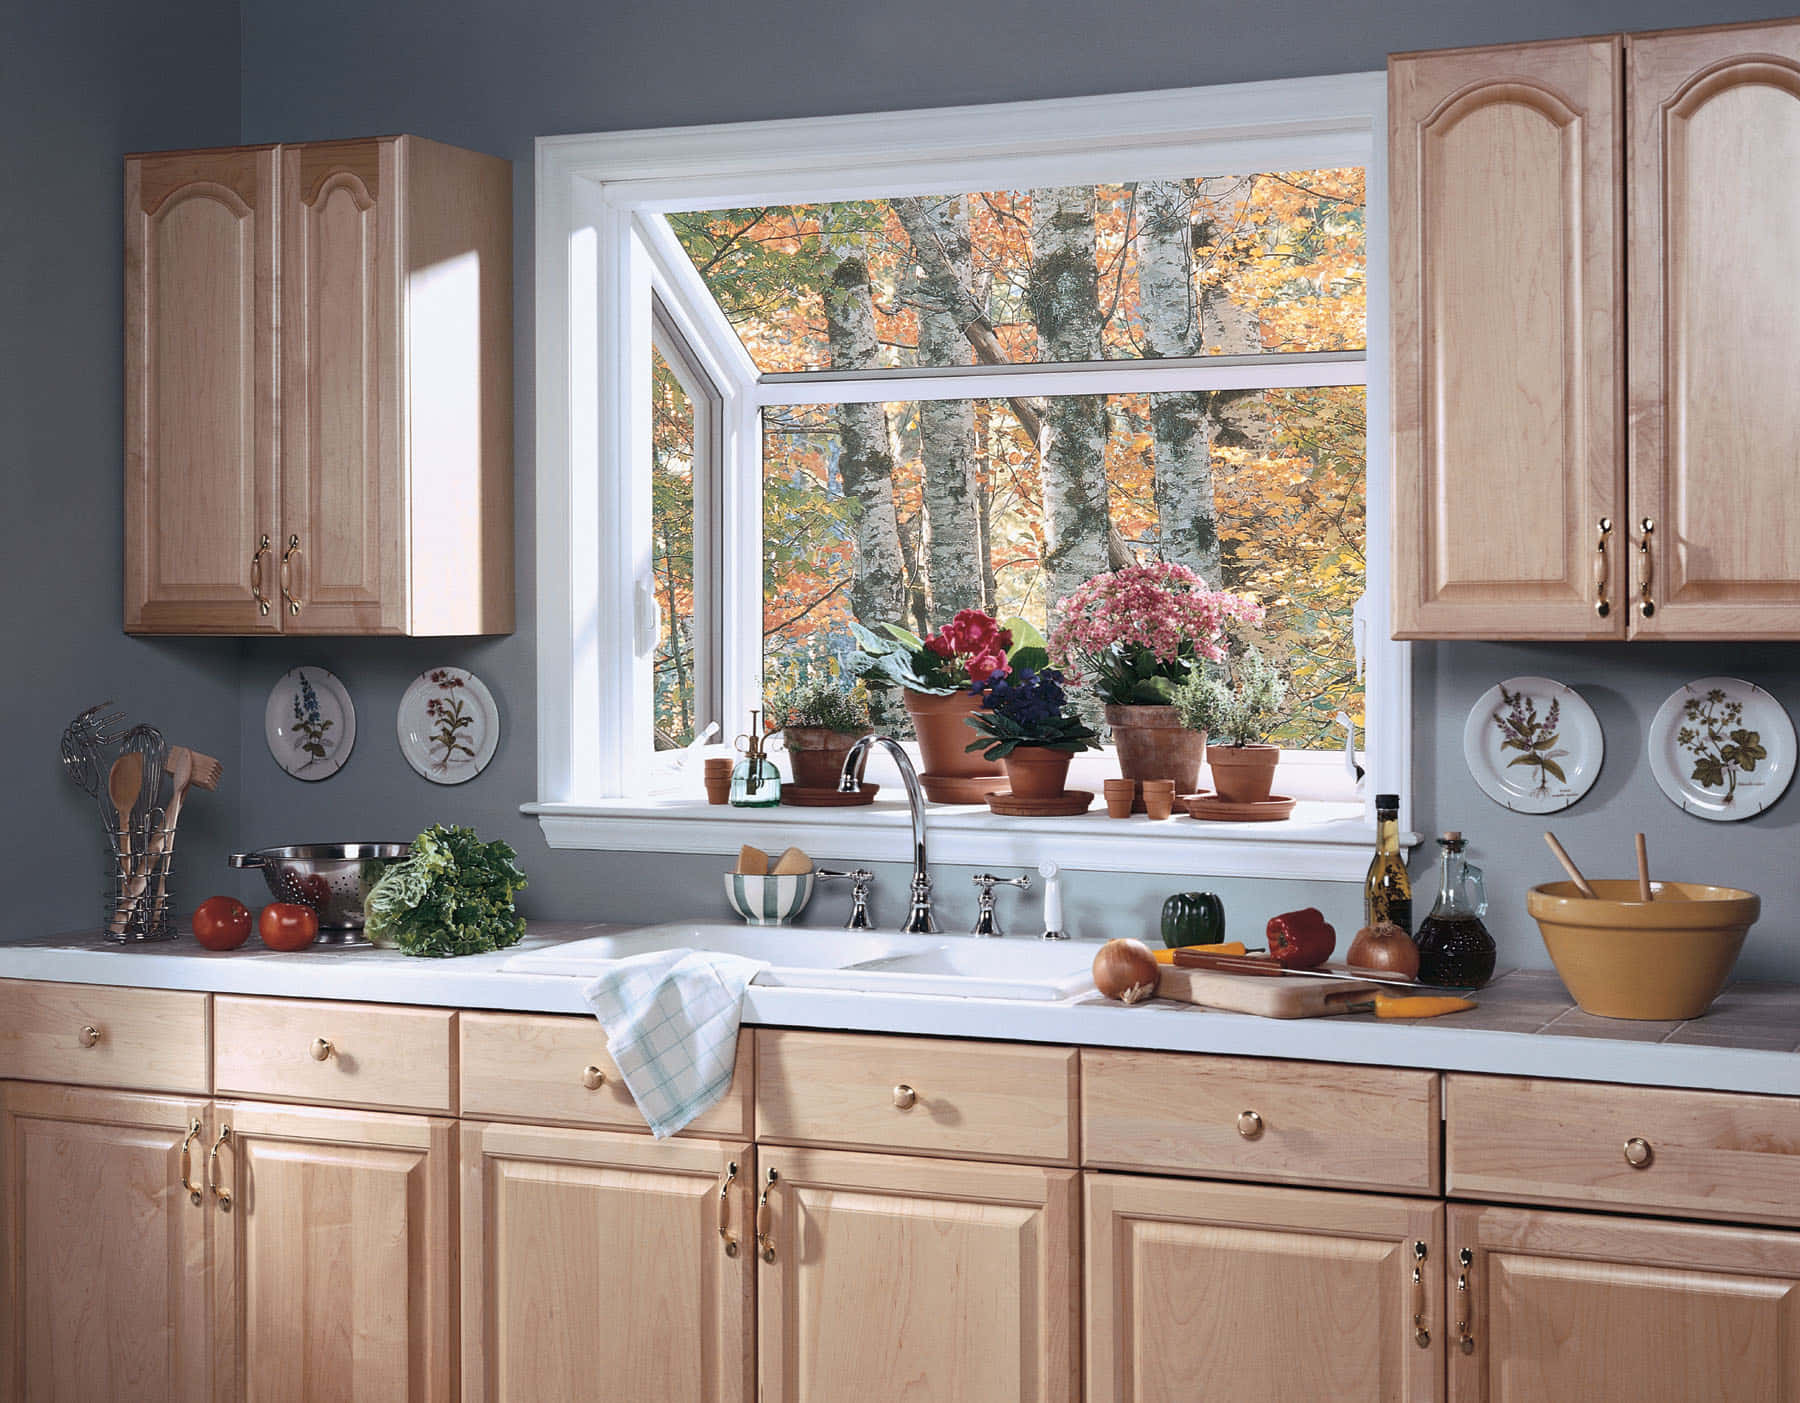 Bilderim Stil Von Gartennischenfenstern In Der Küche.